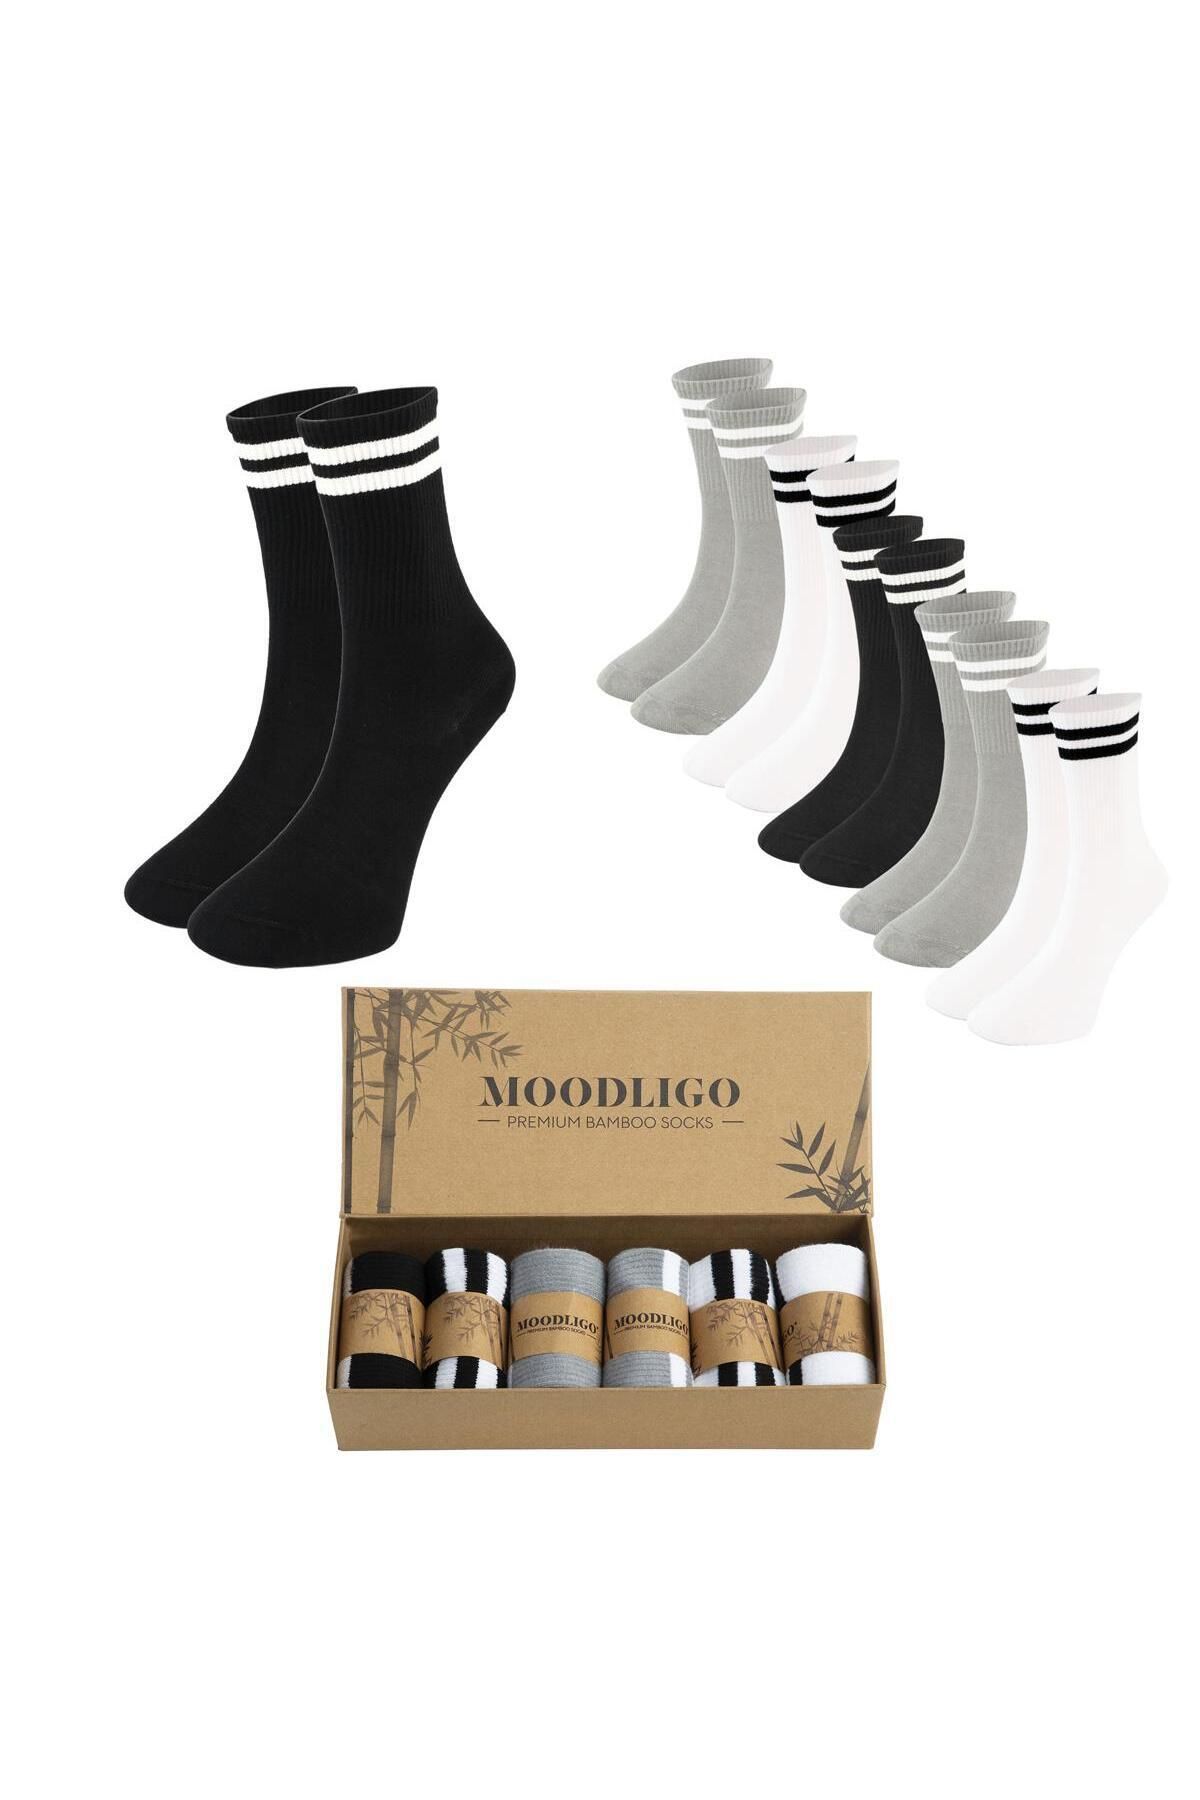 Moodligo Kadın 6'lı Premium Bambu Çizgili Kolej Tenis Çorabı - 2 Siyah 2 Gri 2 Beyaz - Kutulu